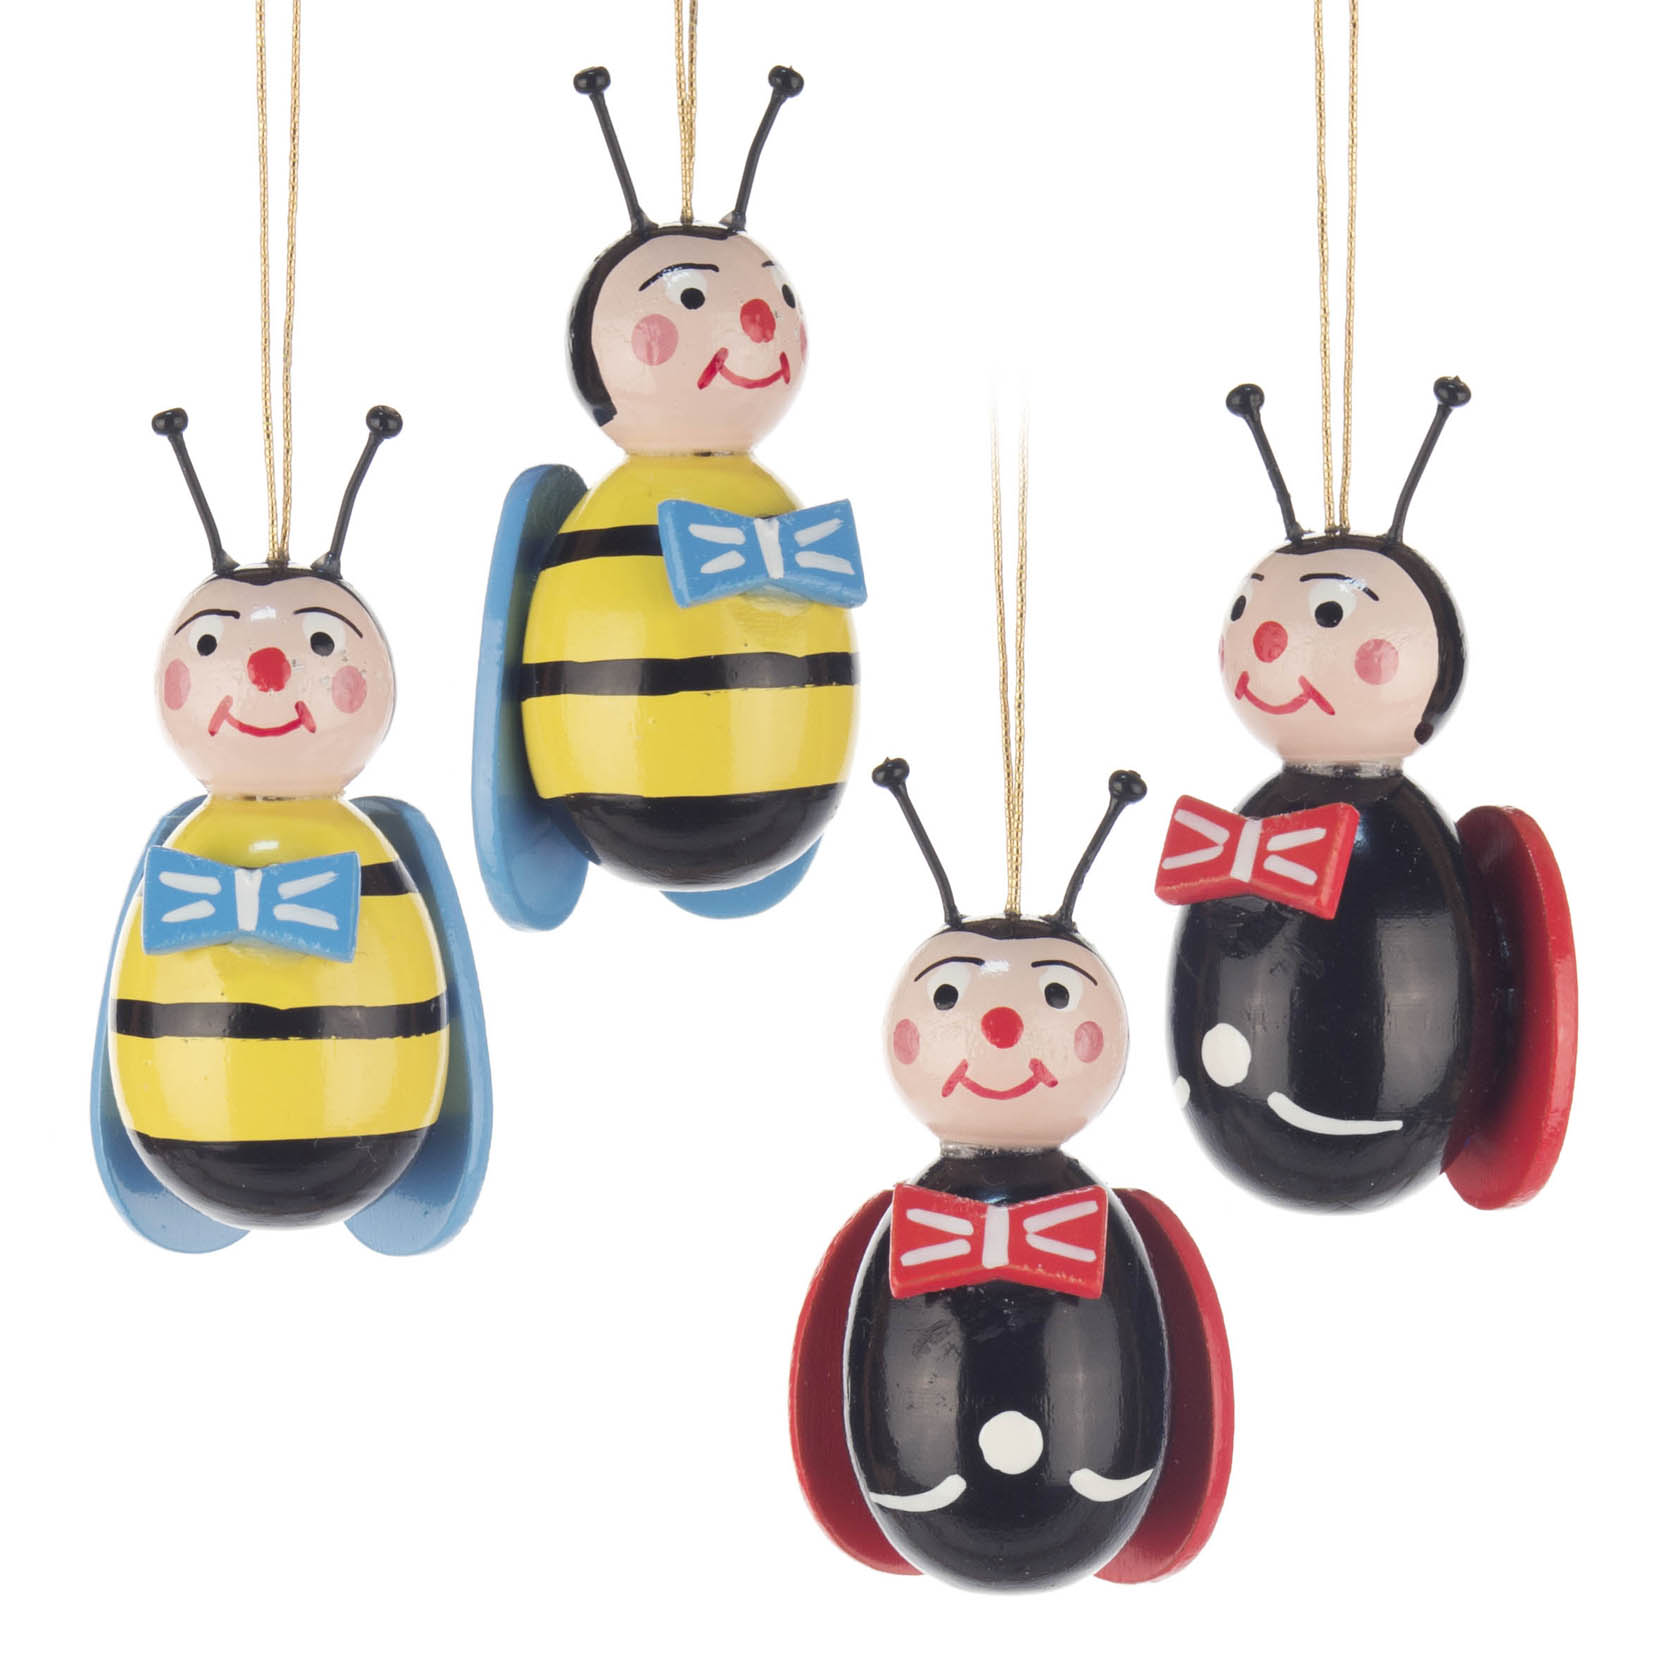 Behang Bienen und Maikäfer (4) im Dregeno Online Shop günstig kaufen